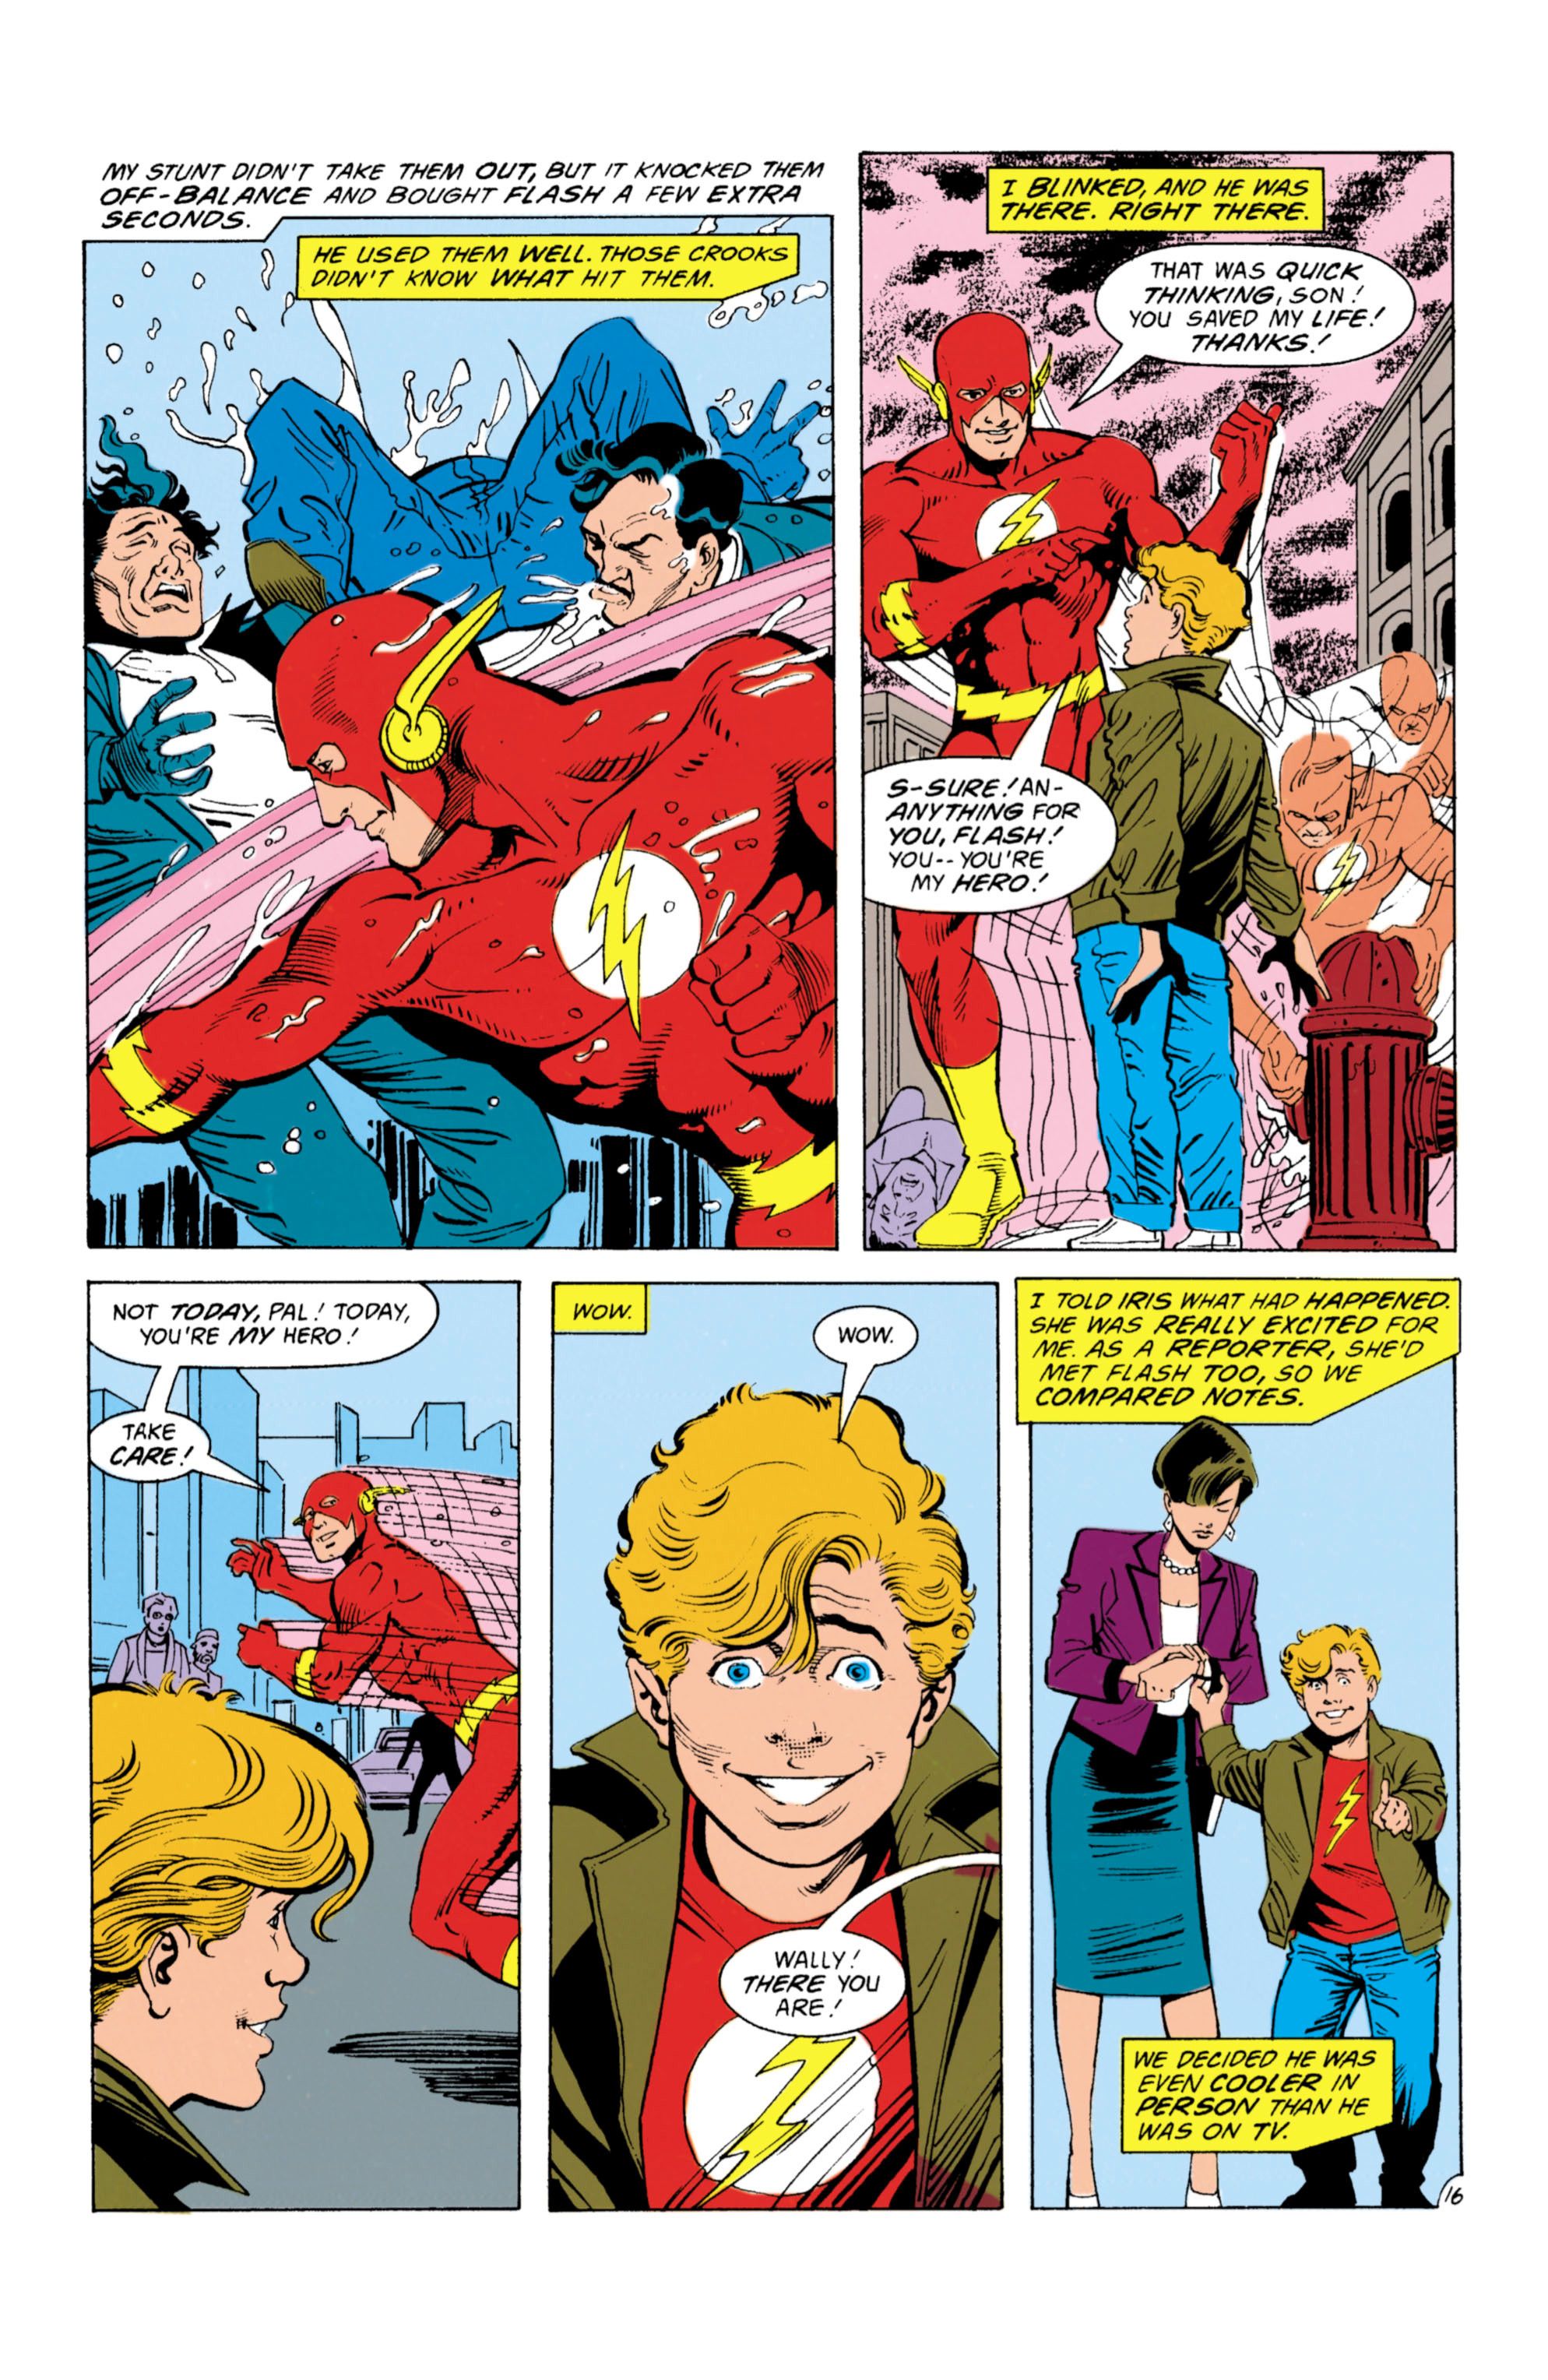 The Flash: Wally West Was Barry Allen’s Sidekick (Before He Got Powers)